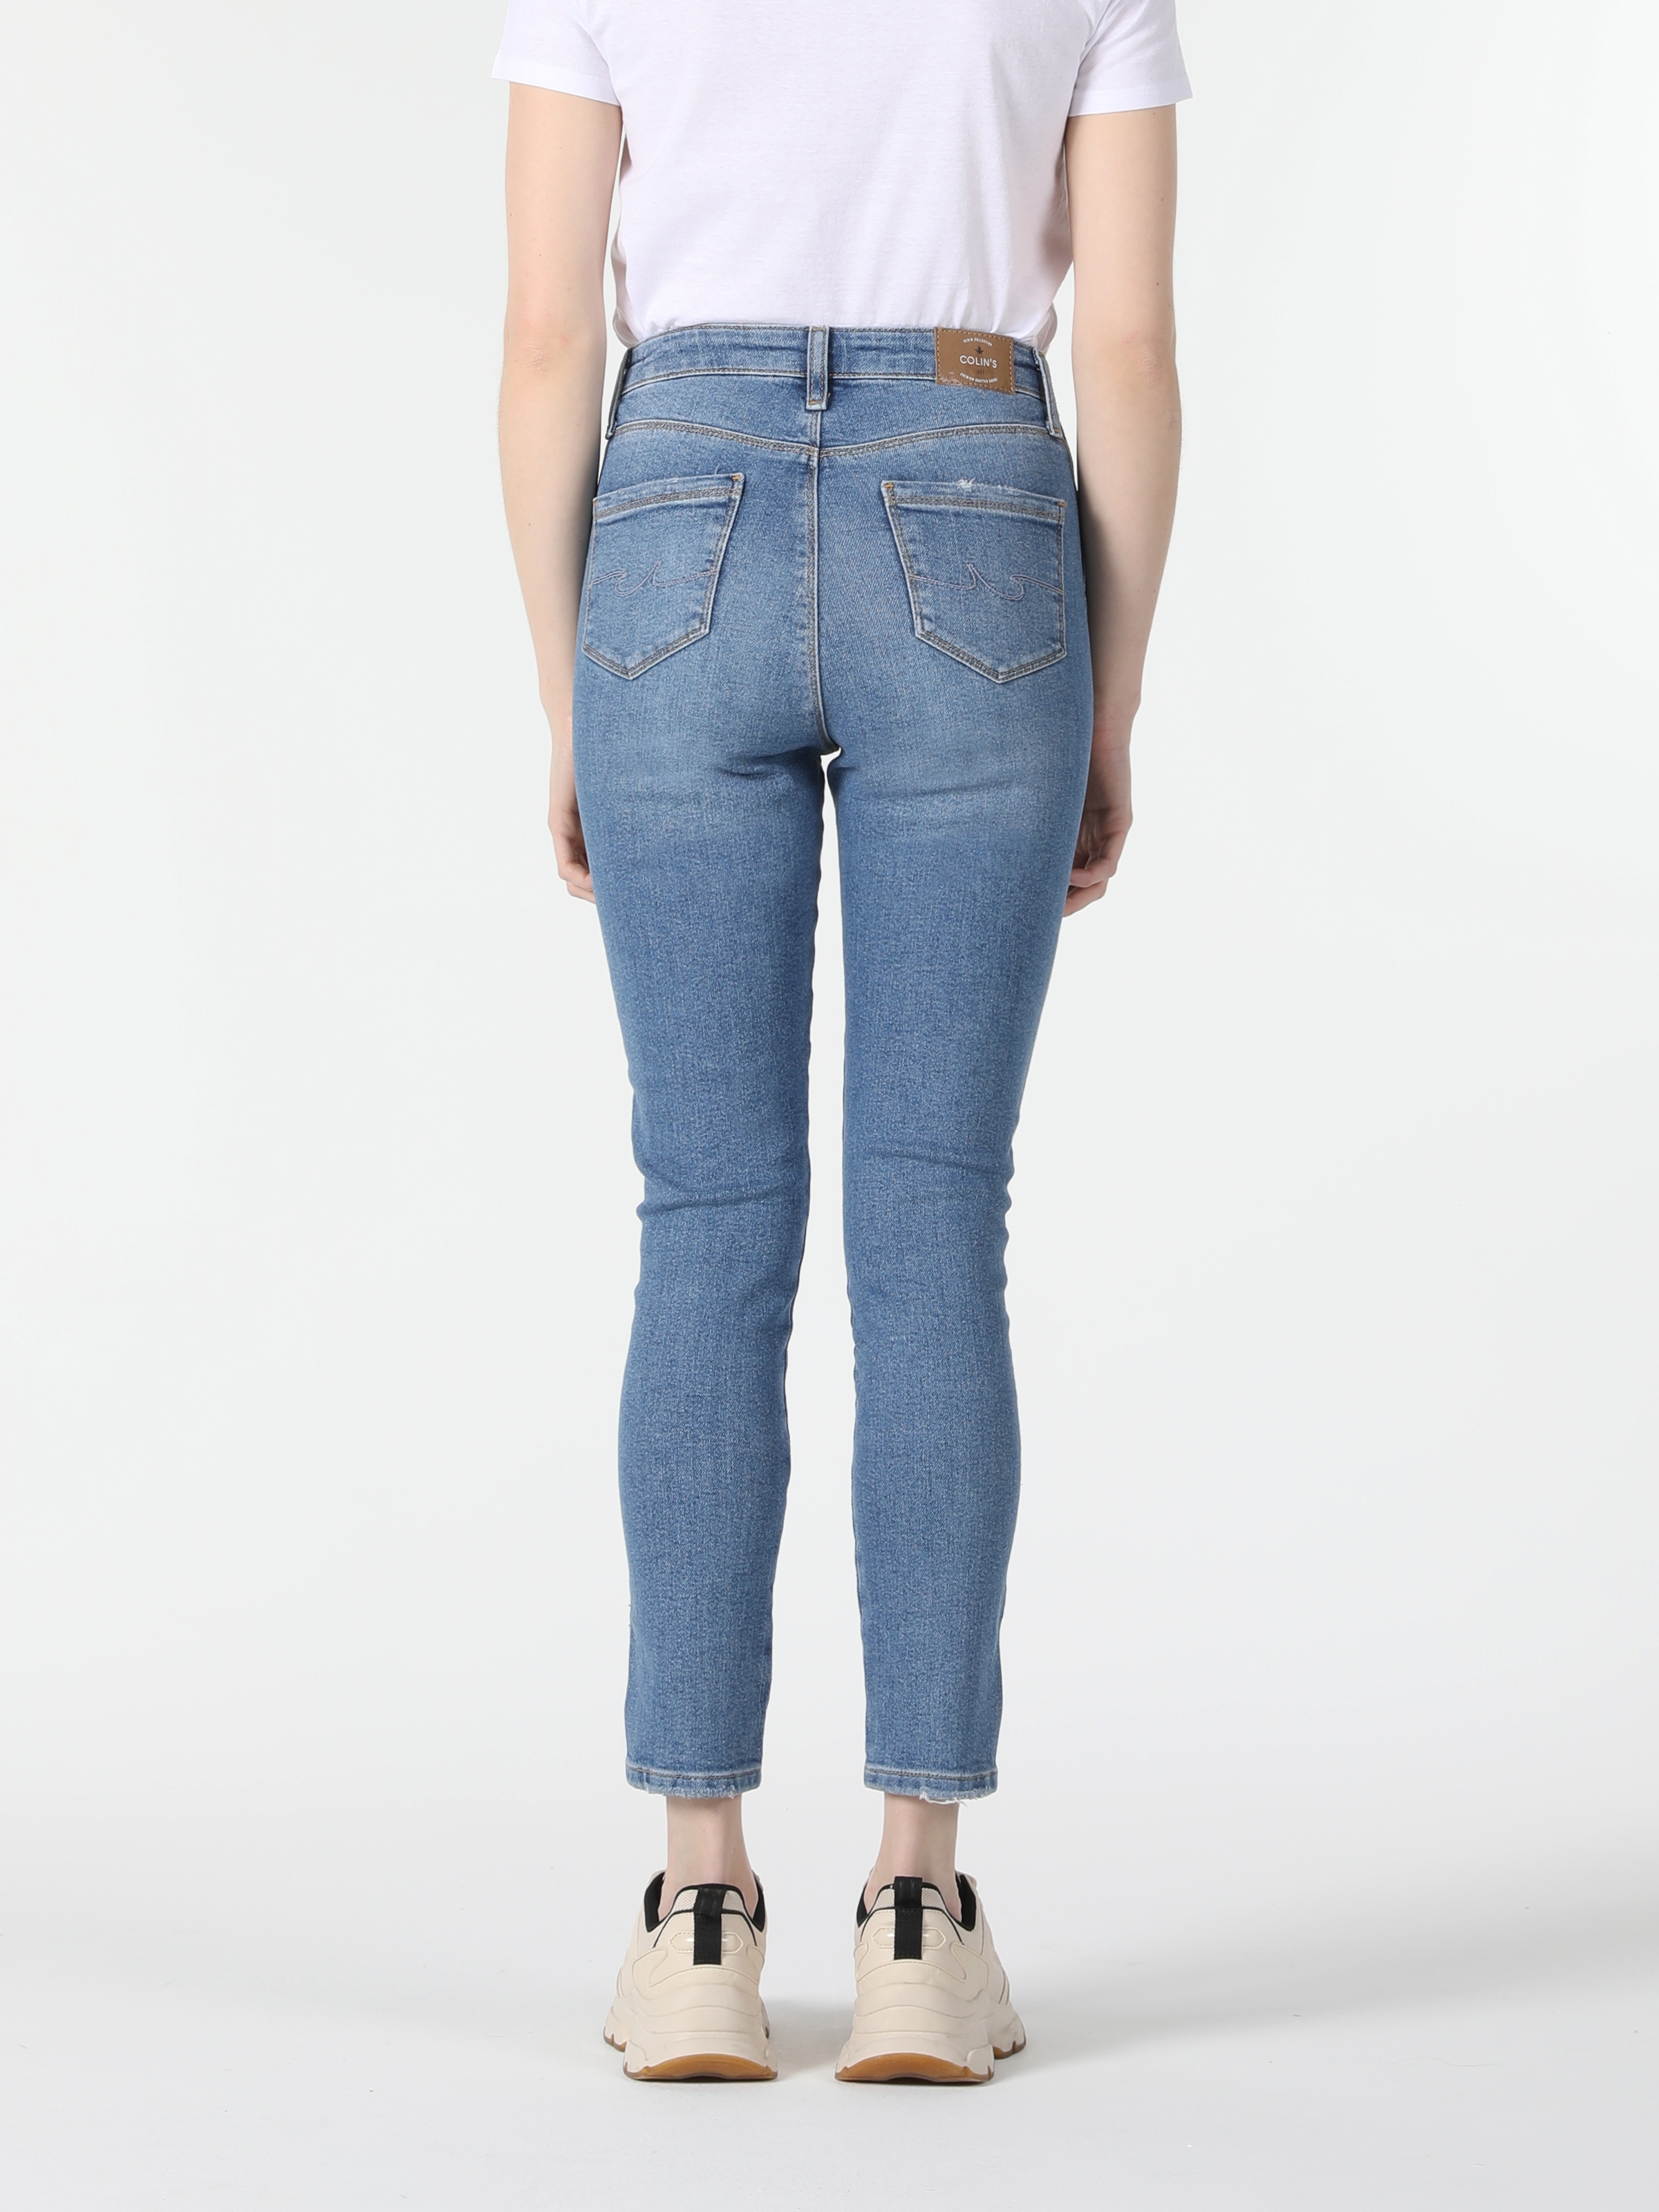 Afficher les détails de 760 Diana Pantalon En Jean Bleu Clair Taille Haute Coupe Super Slim Pour Femme